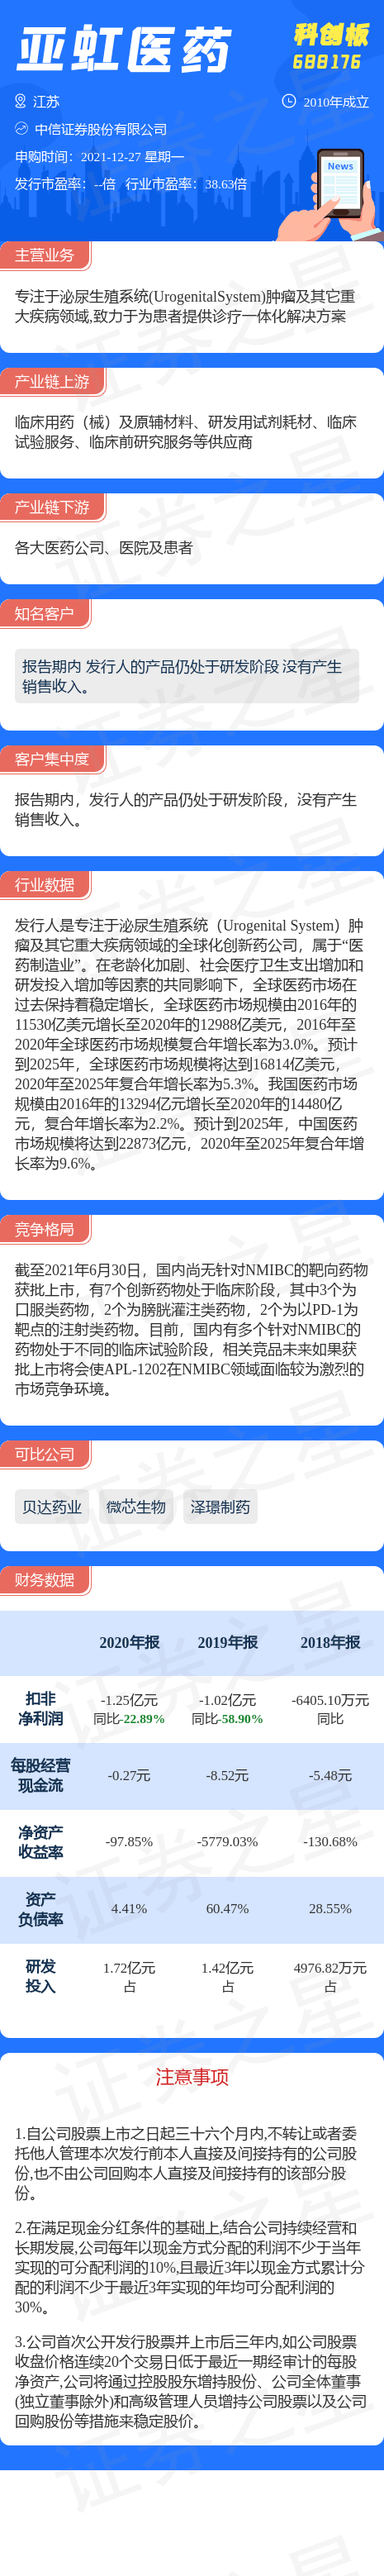 【新股动态】亚虹医药12月27日申购一图读懂亚虹医药